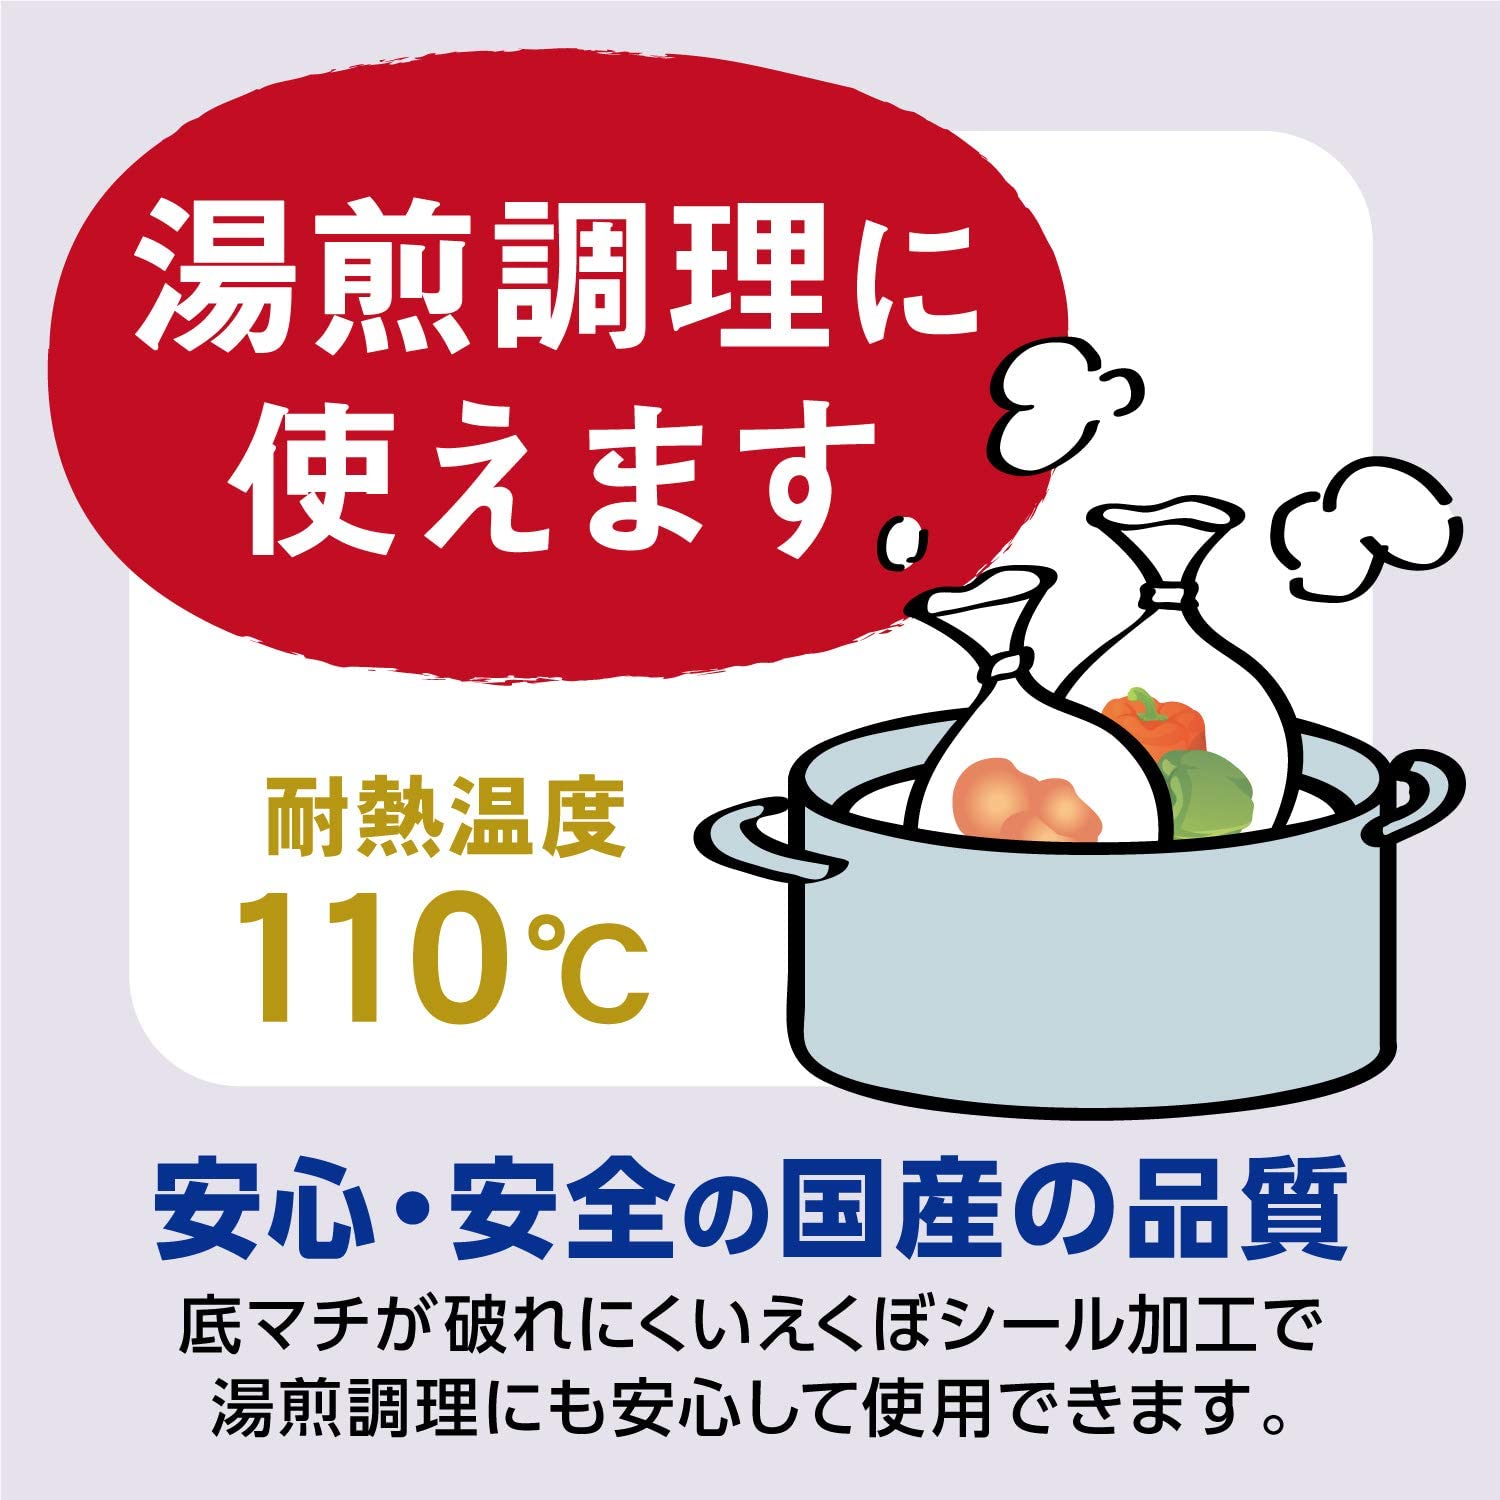 Hộp 40 túi đựng thực phẩm chịu nhiệt Ordiy hàng nội địa Nhật Bản (Made in Japan) hàng nhập khẩu chính hãng